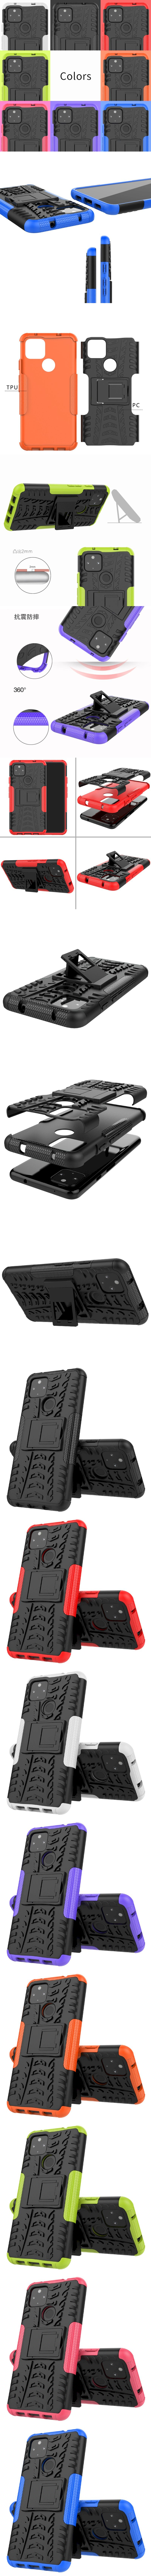 250-Google-胎紋鎧甲盾全包手機殼背蓋(Pixel 4a 5G)